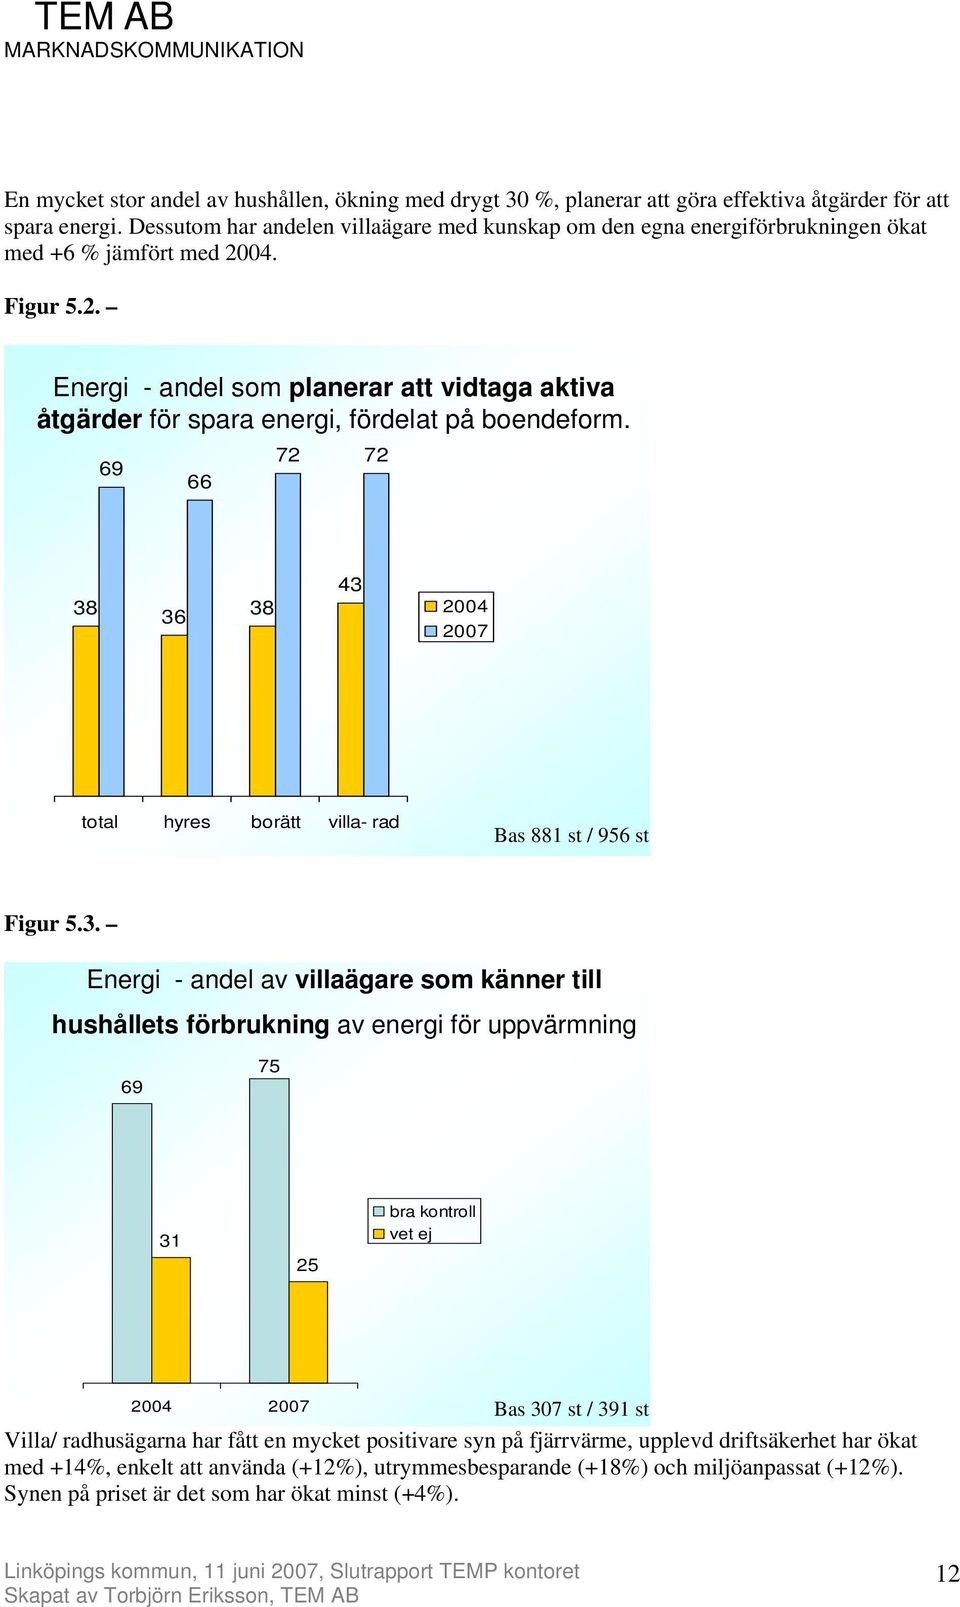 04. Figur 5.2. Energi - andel som planerar att vidtaga aktiva åtgärder för spara energi, fördelat på boendeform.